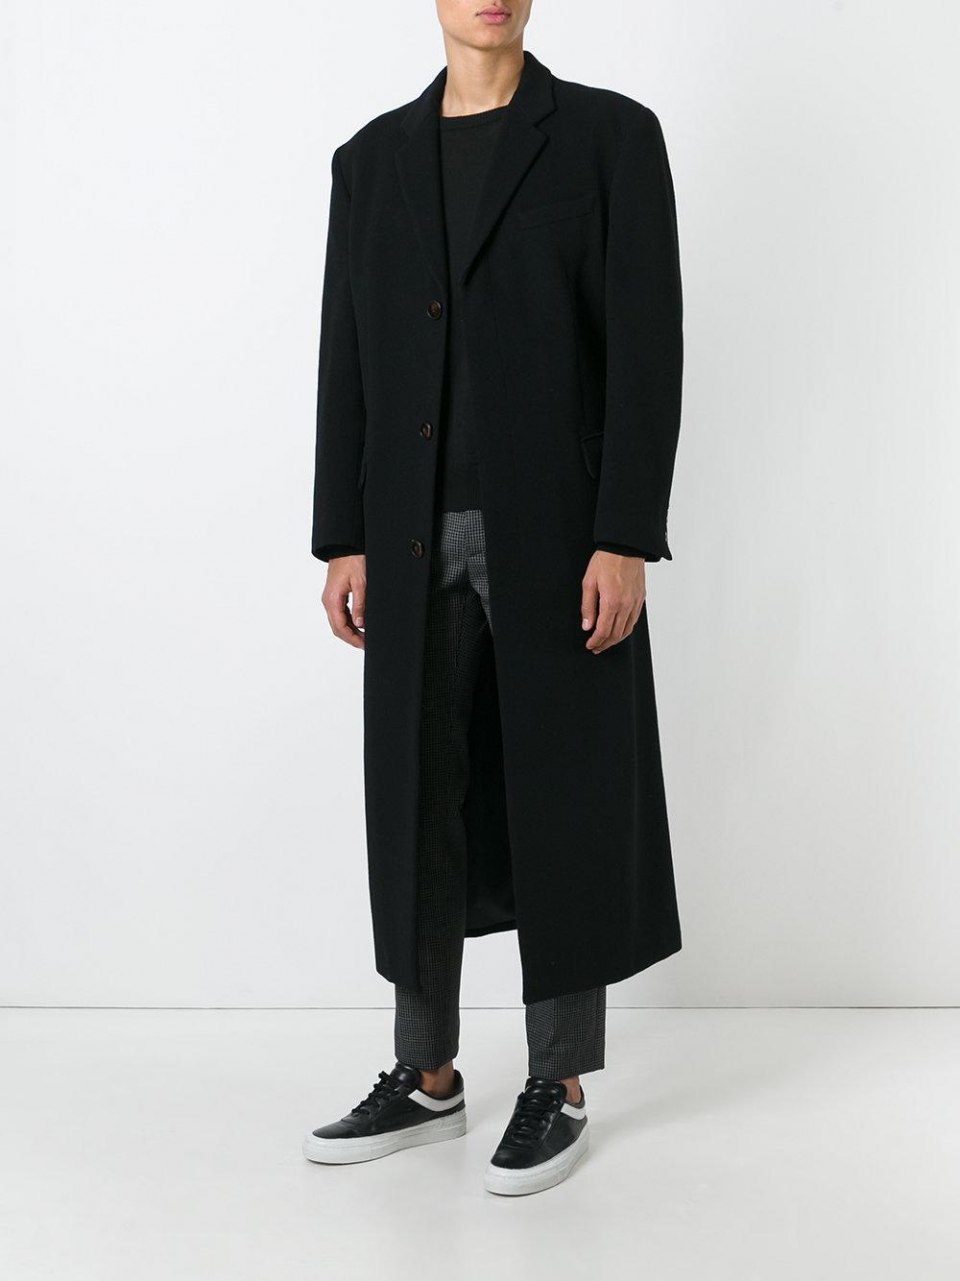 Купить черное пальто мужское. Пальто мужское Formenti 2020. Пальто мужское черное длинное. Пальто до колен мужское. Пальто ниже колена мужское.